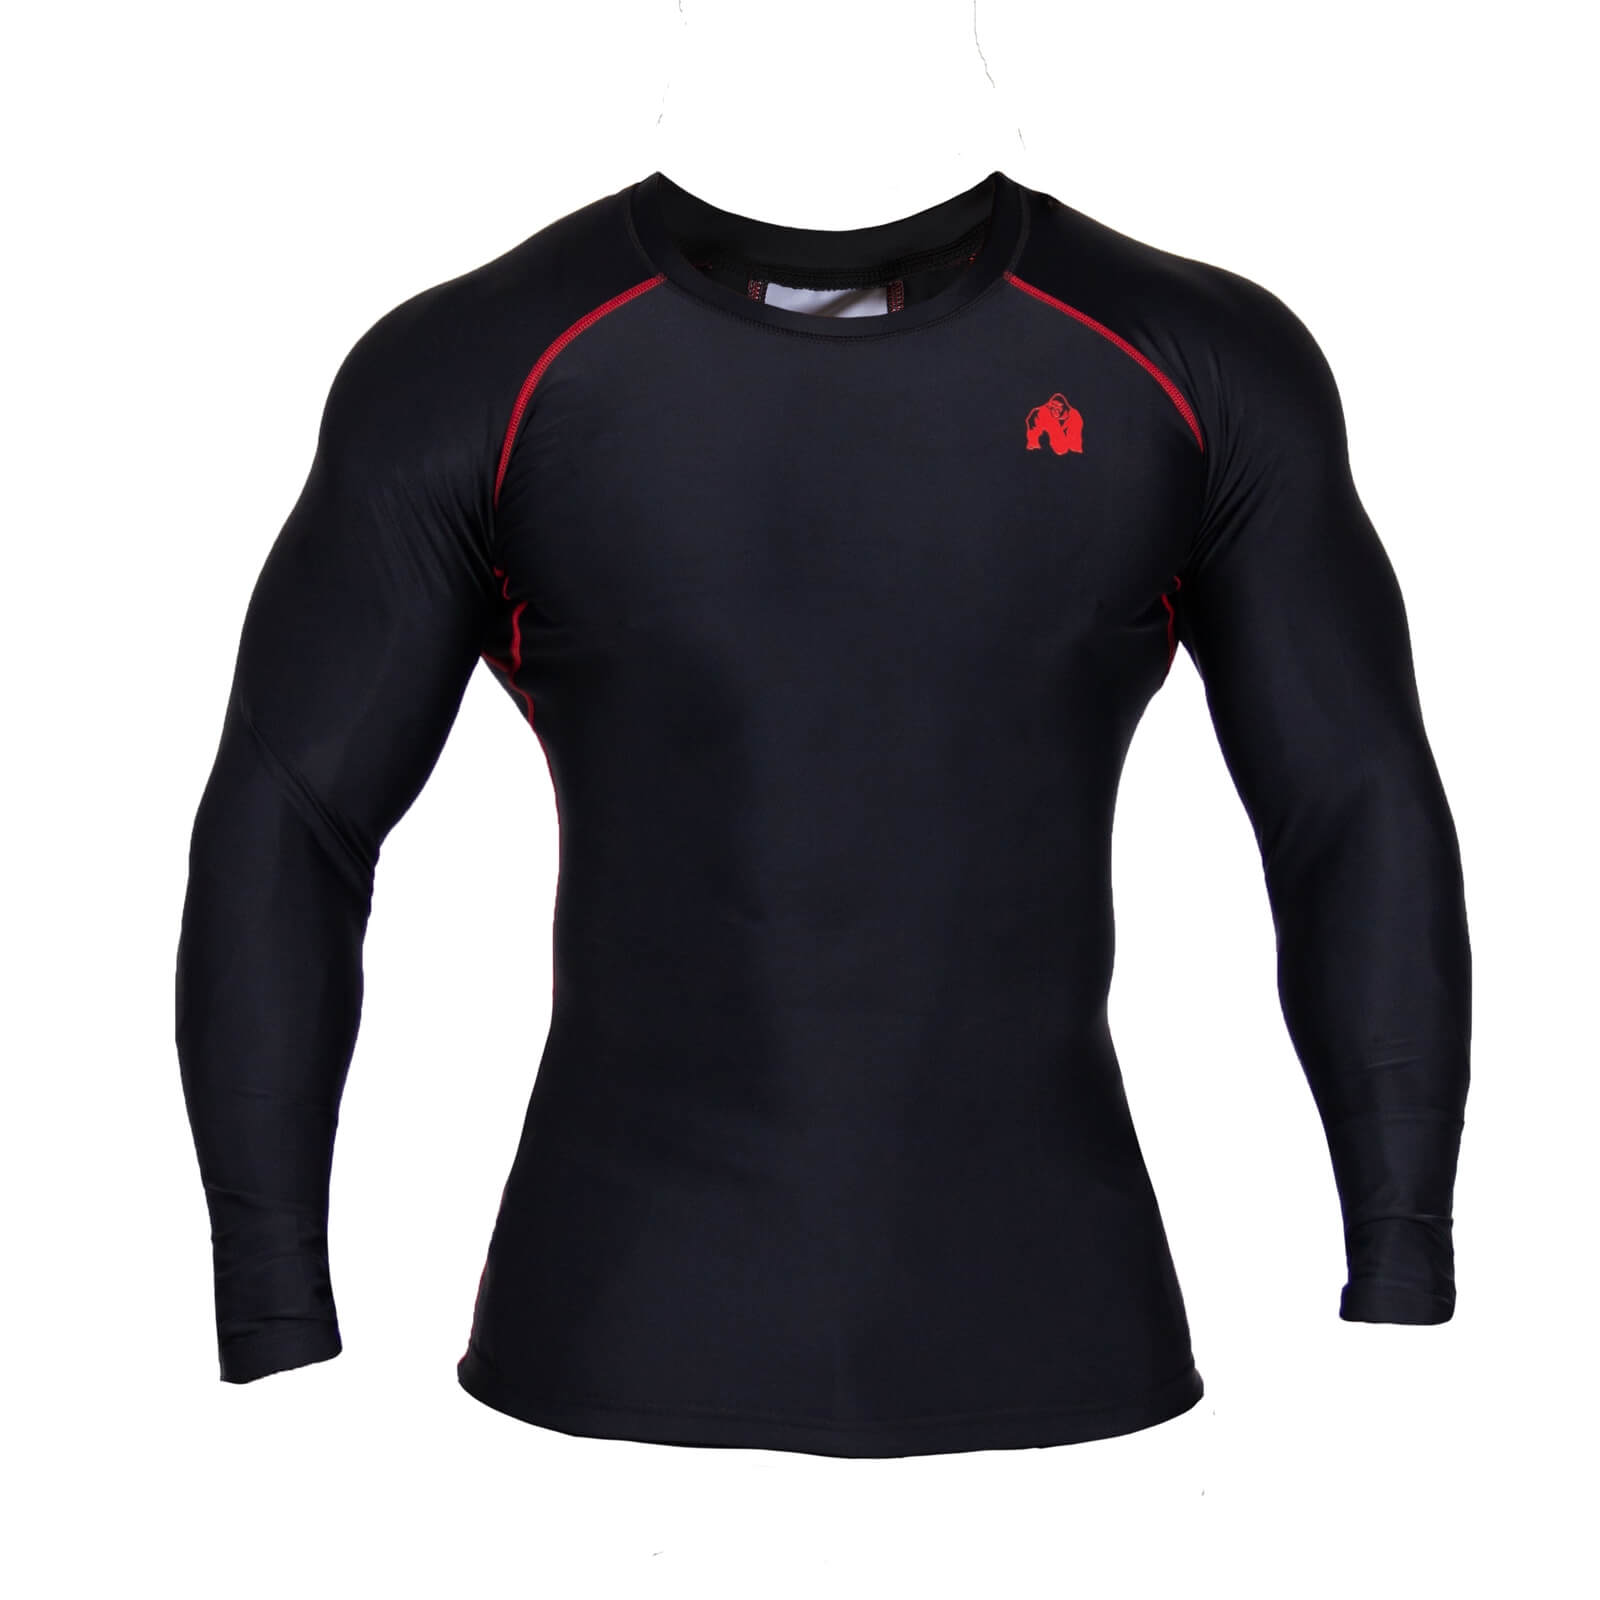 Sjekke Hayden Compression Longsleeve, black/red, Gorilla Wear hos SportGymButikk